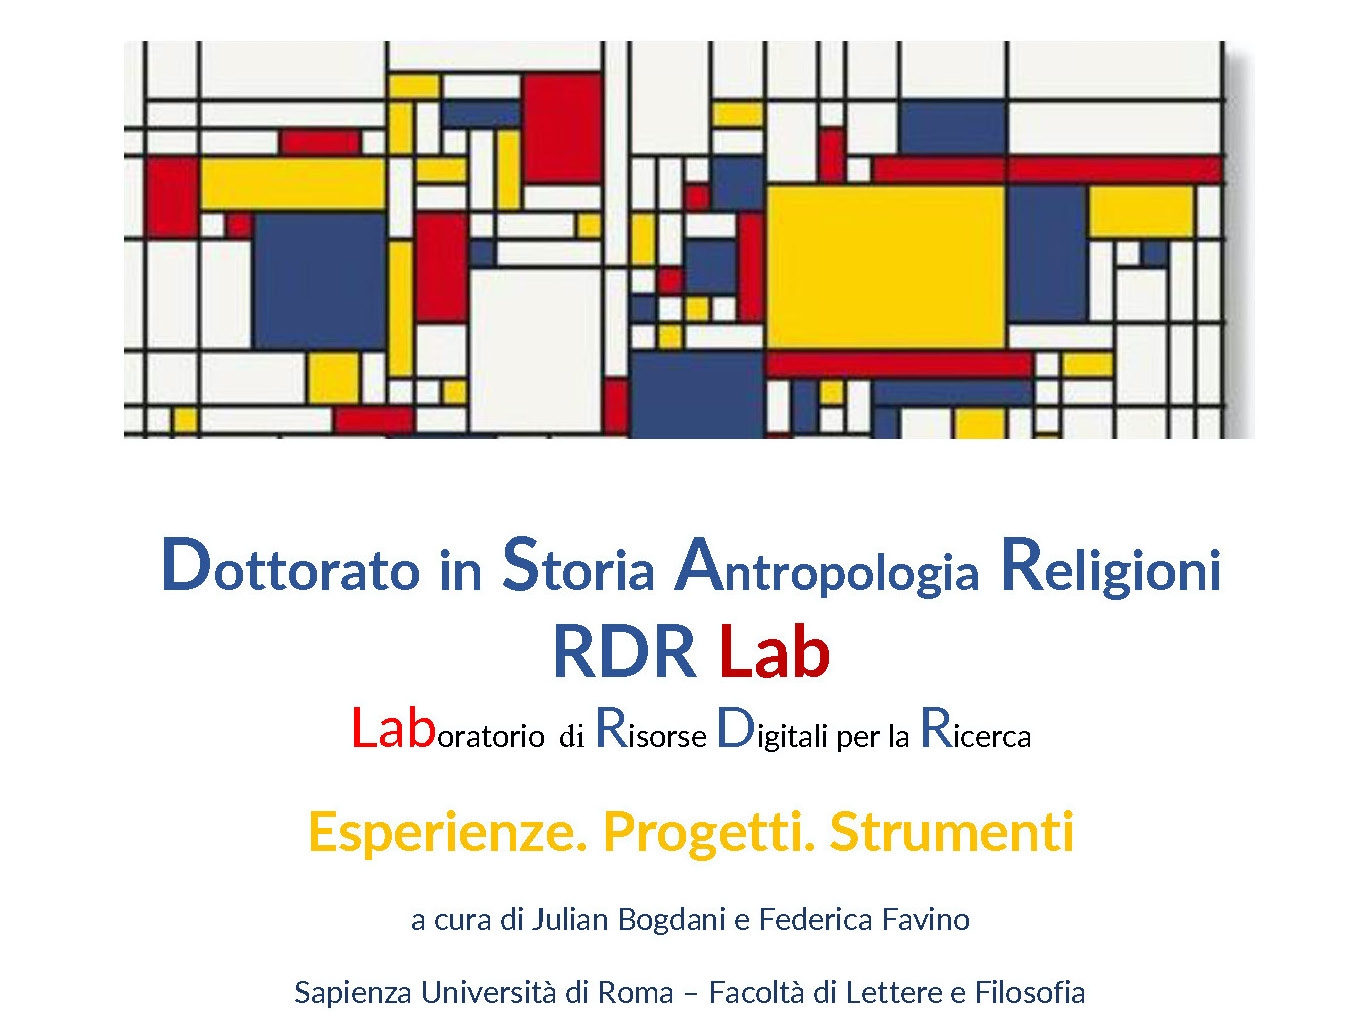 Inaugurazione dell'RDR Lab: Laboratorio di Risorse Digitali per la Ricerca di null